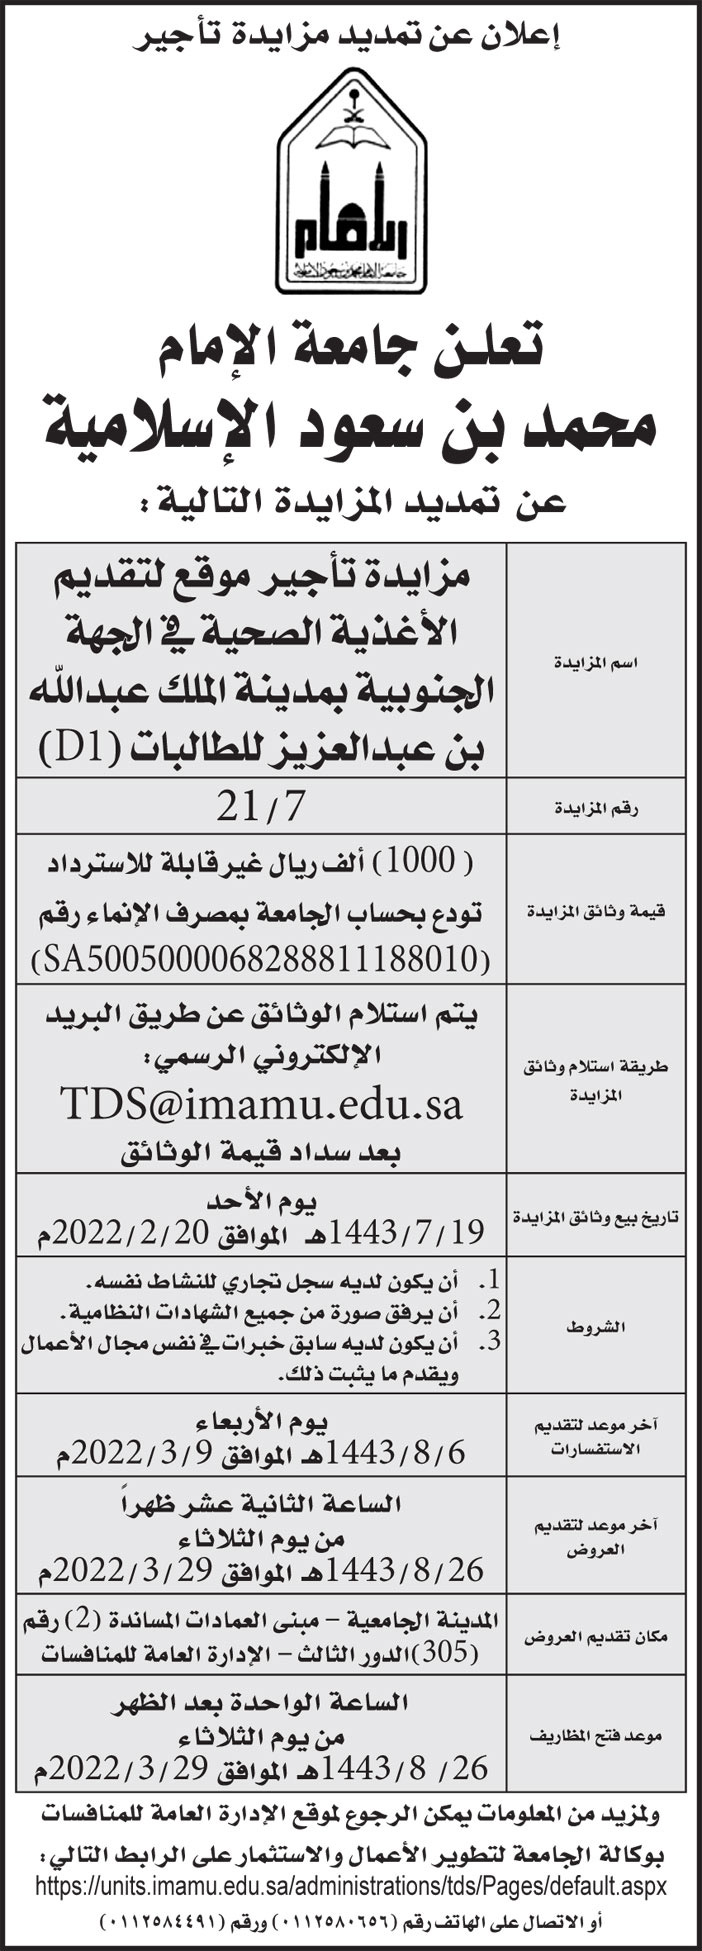 جامعة الإمام محمد بن سعود الإسلامية تمدد مزايدة تأجير موقع لتقديم الأغذية الصحية في الجهة الجنوبية بمدينة الملك عبدالله بن عبدالعزيز للطالبات (D1) 